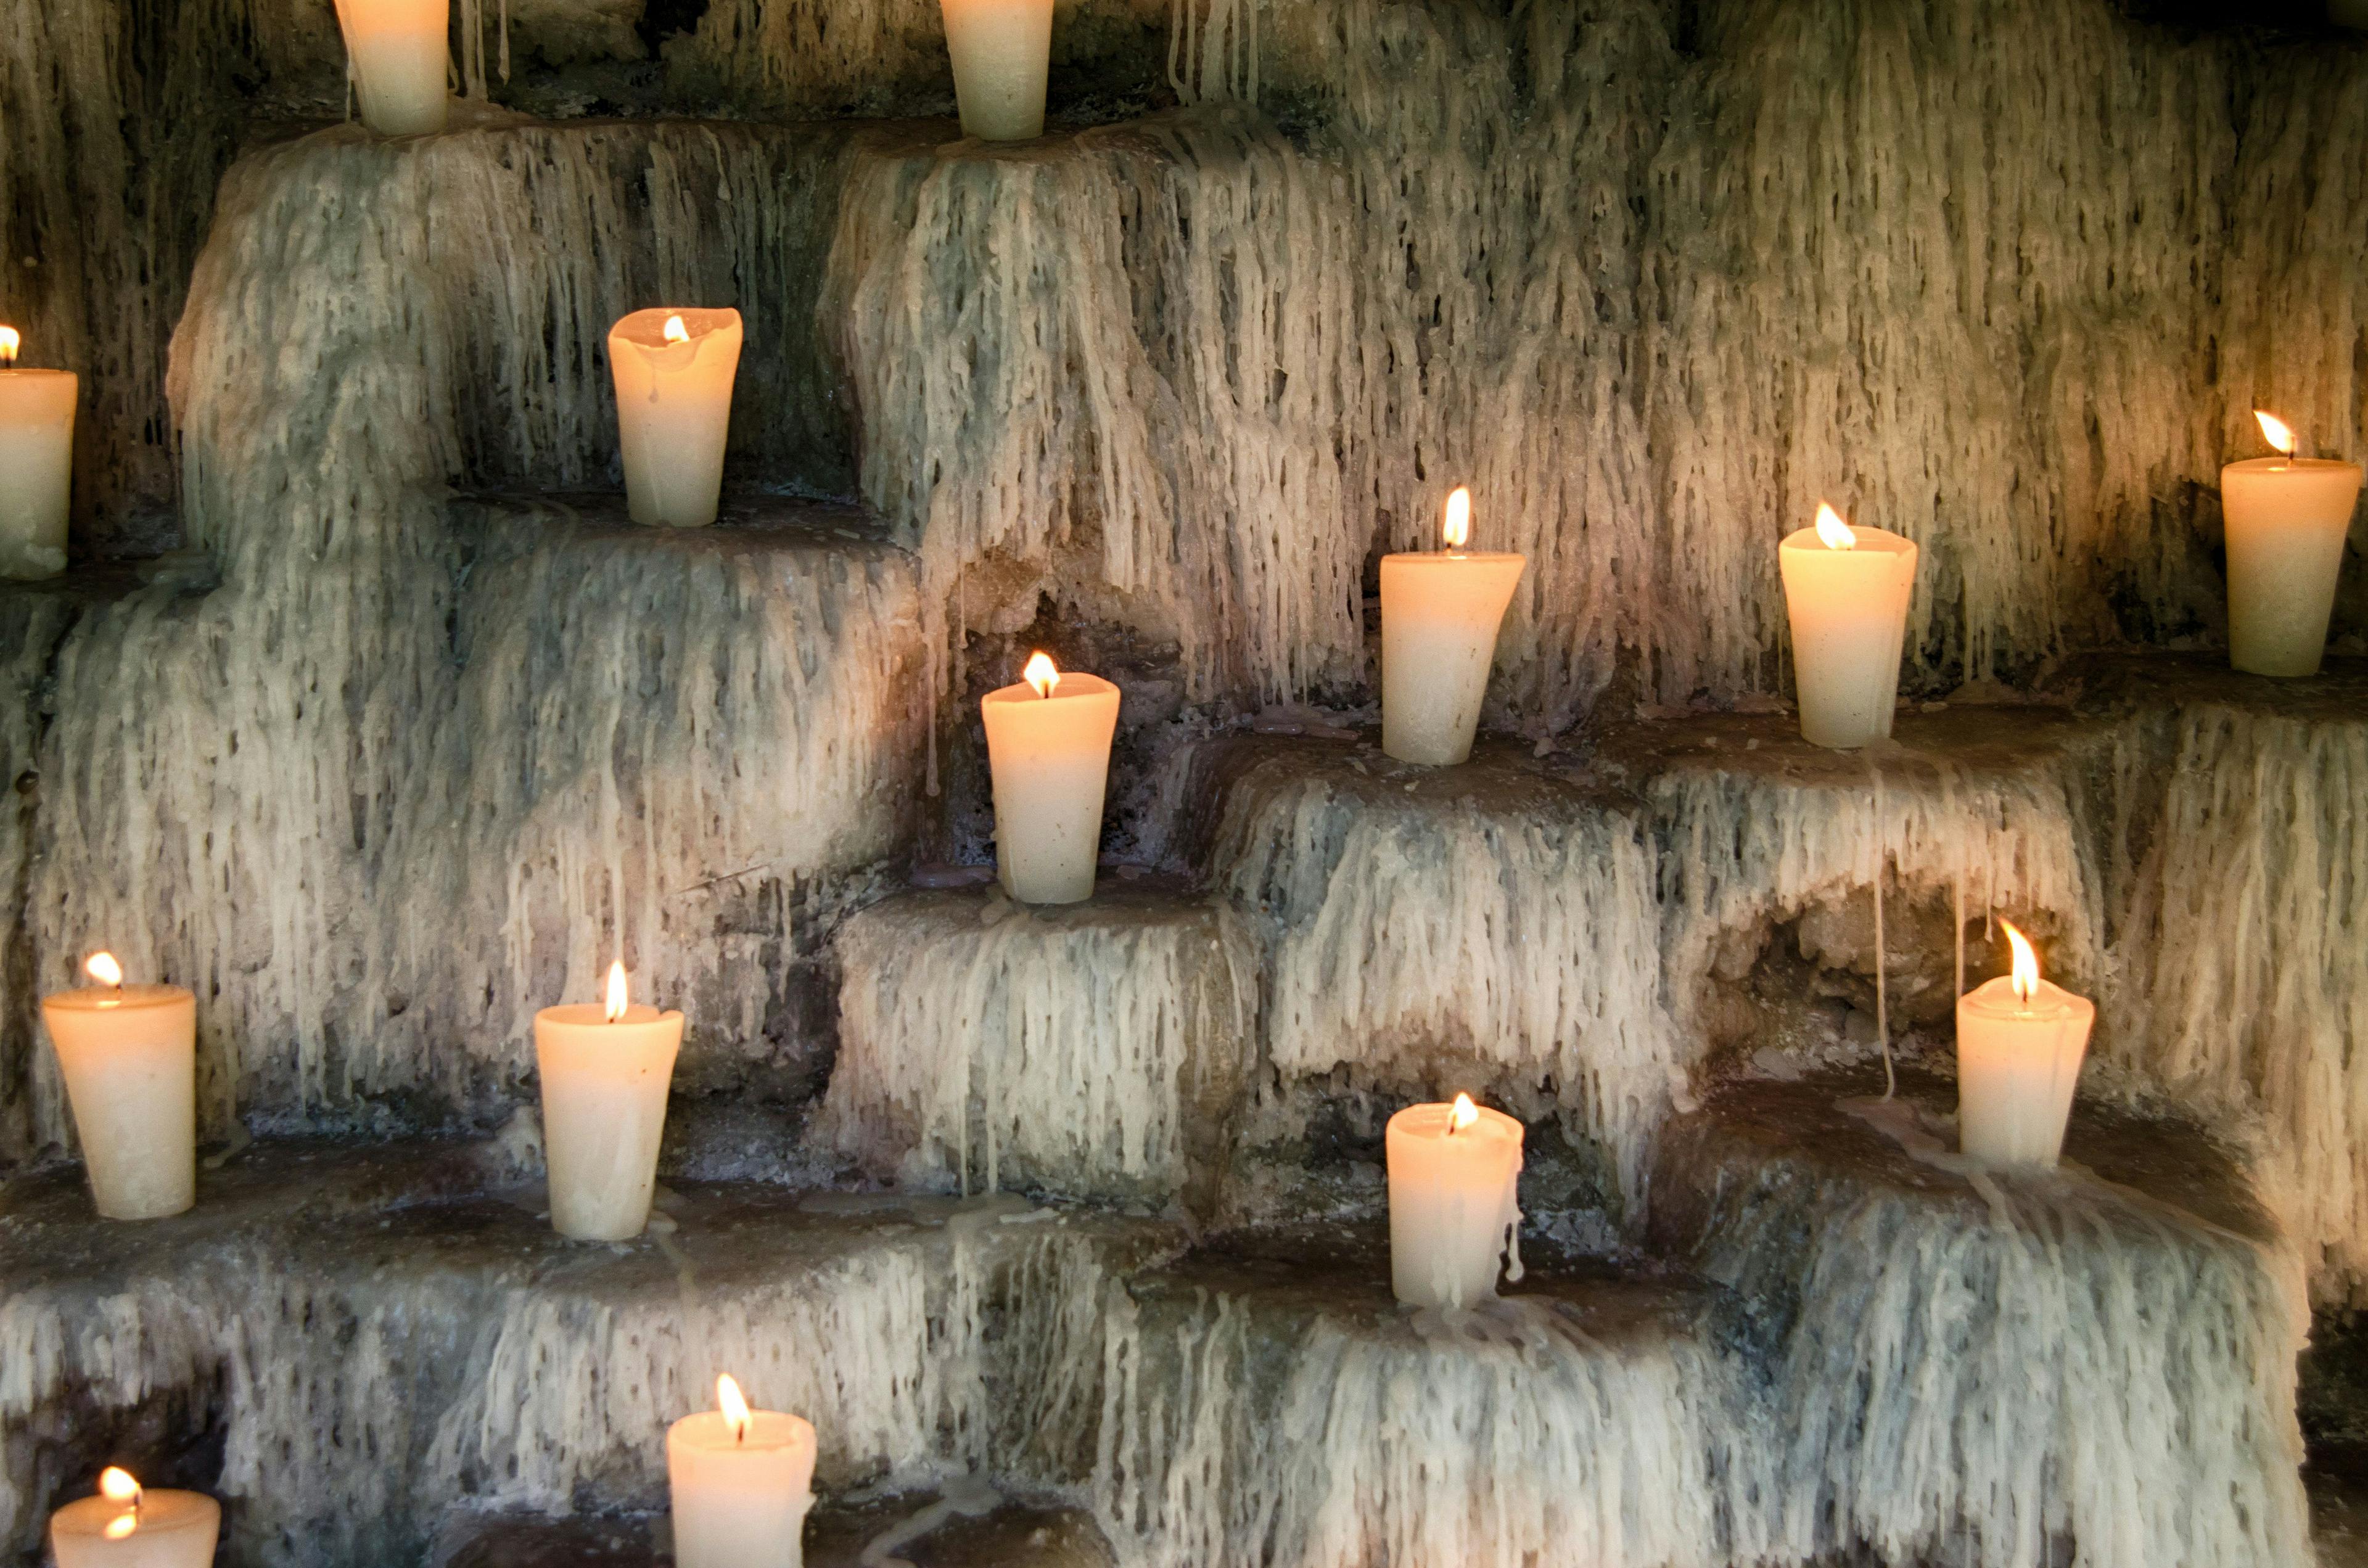 candles, in memoriam